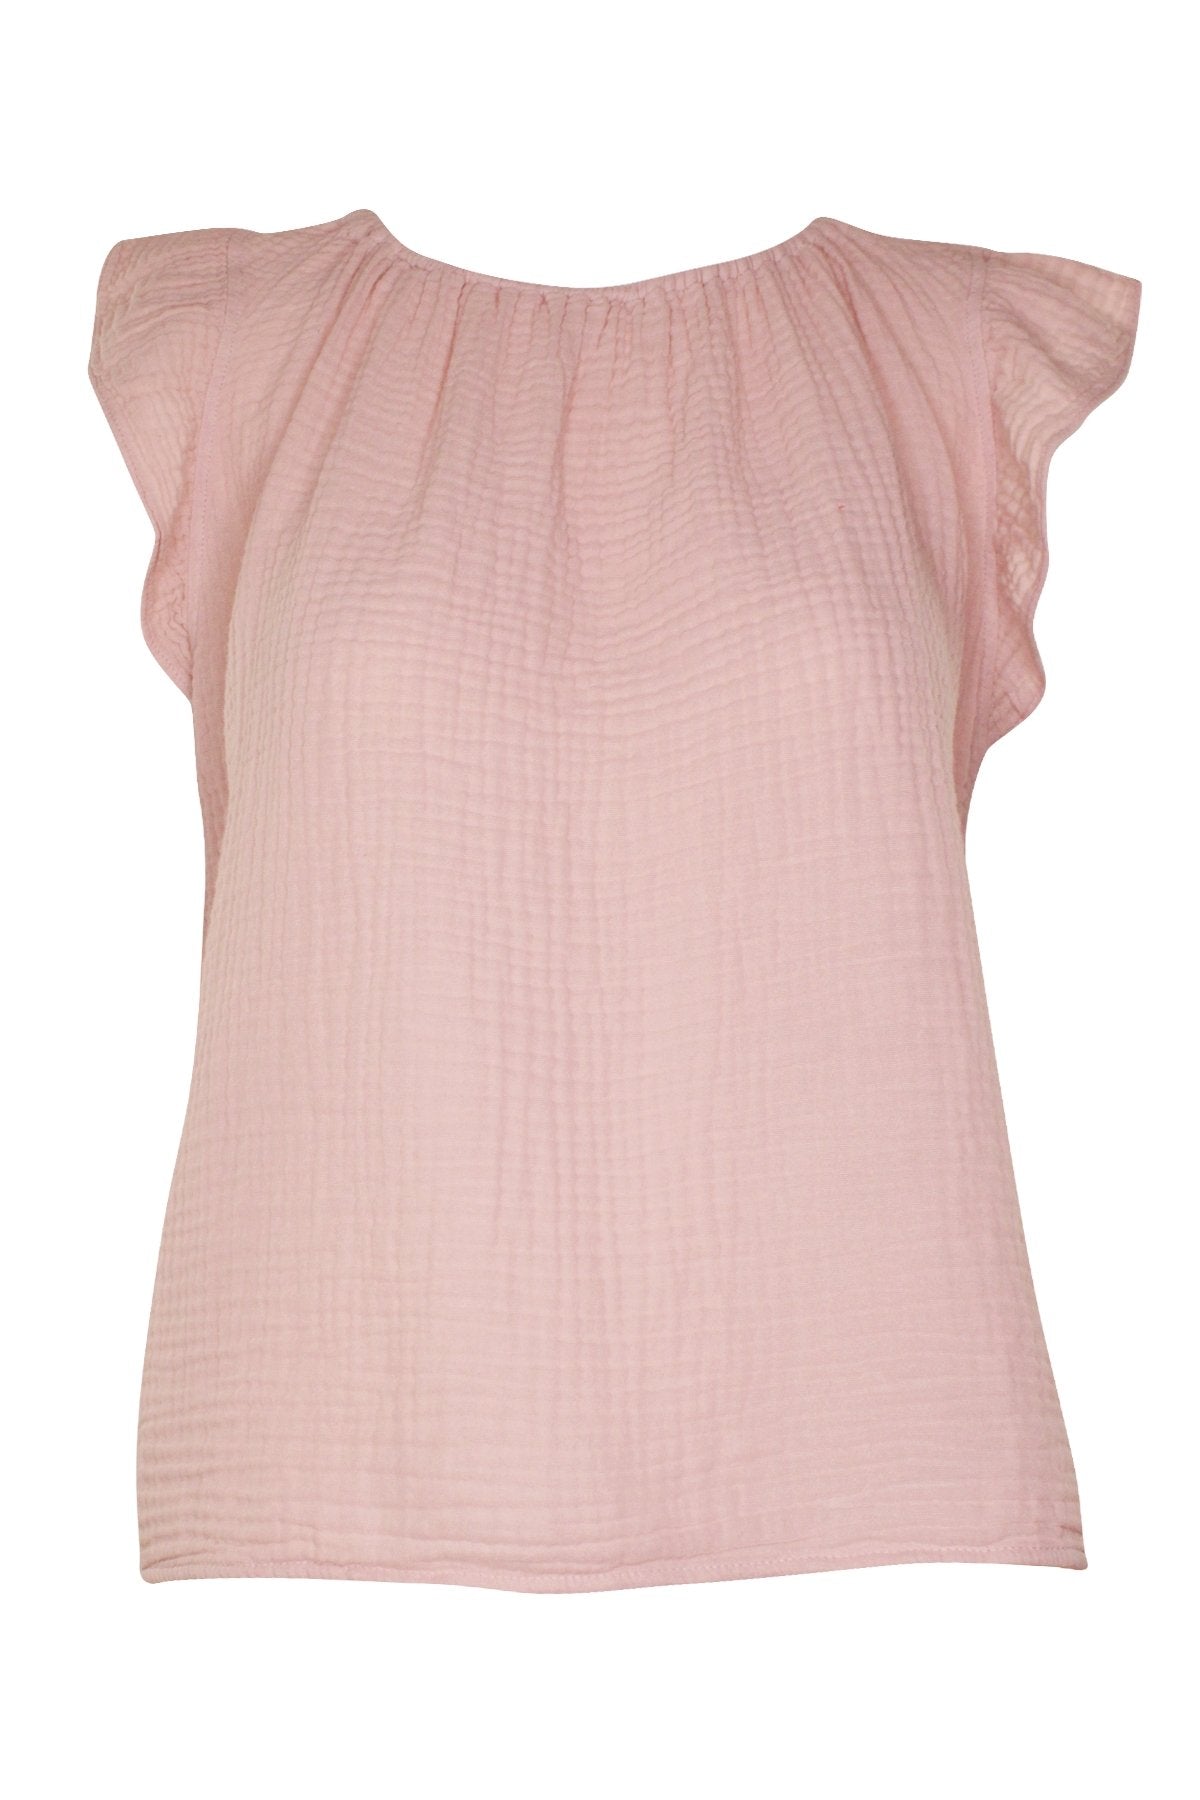 Kaia Short Sleeve Top in Peony - shop-olivia.com